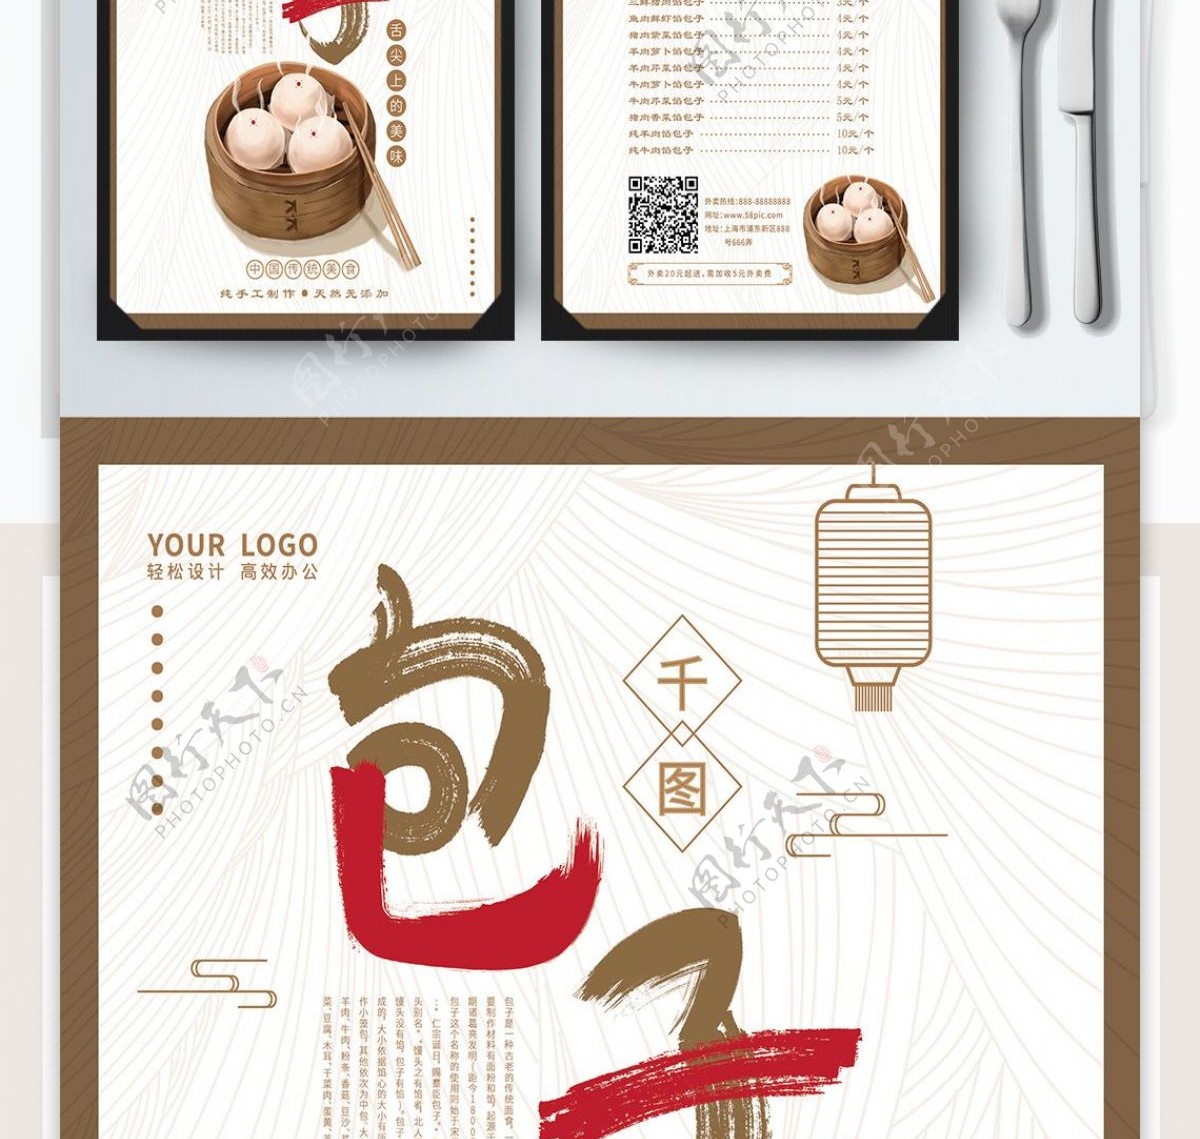 原创手绘风中国风千图包子铺菜单菜牌